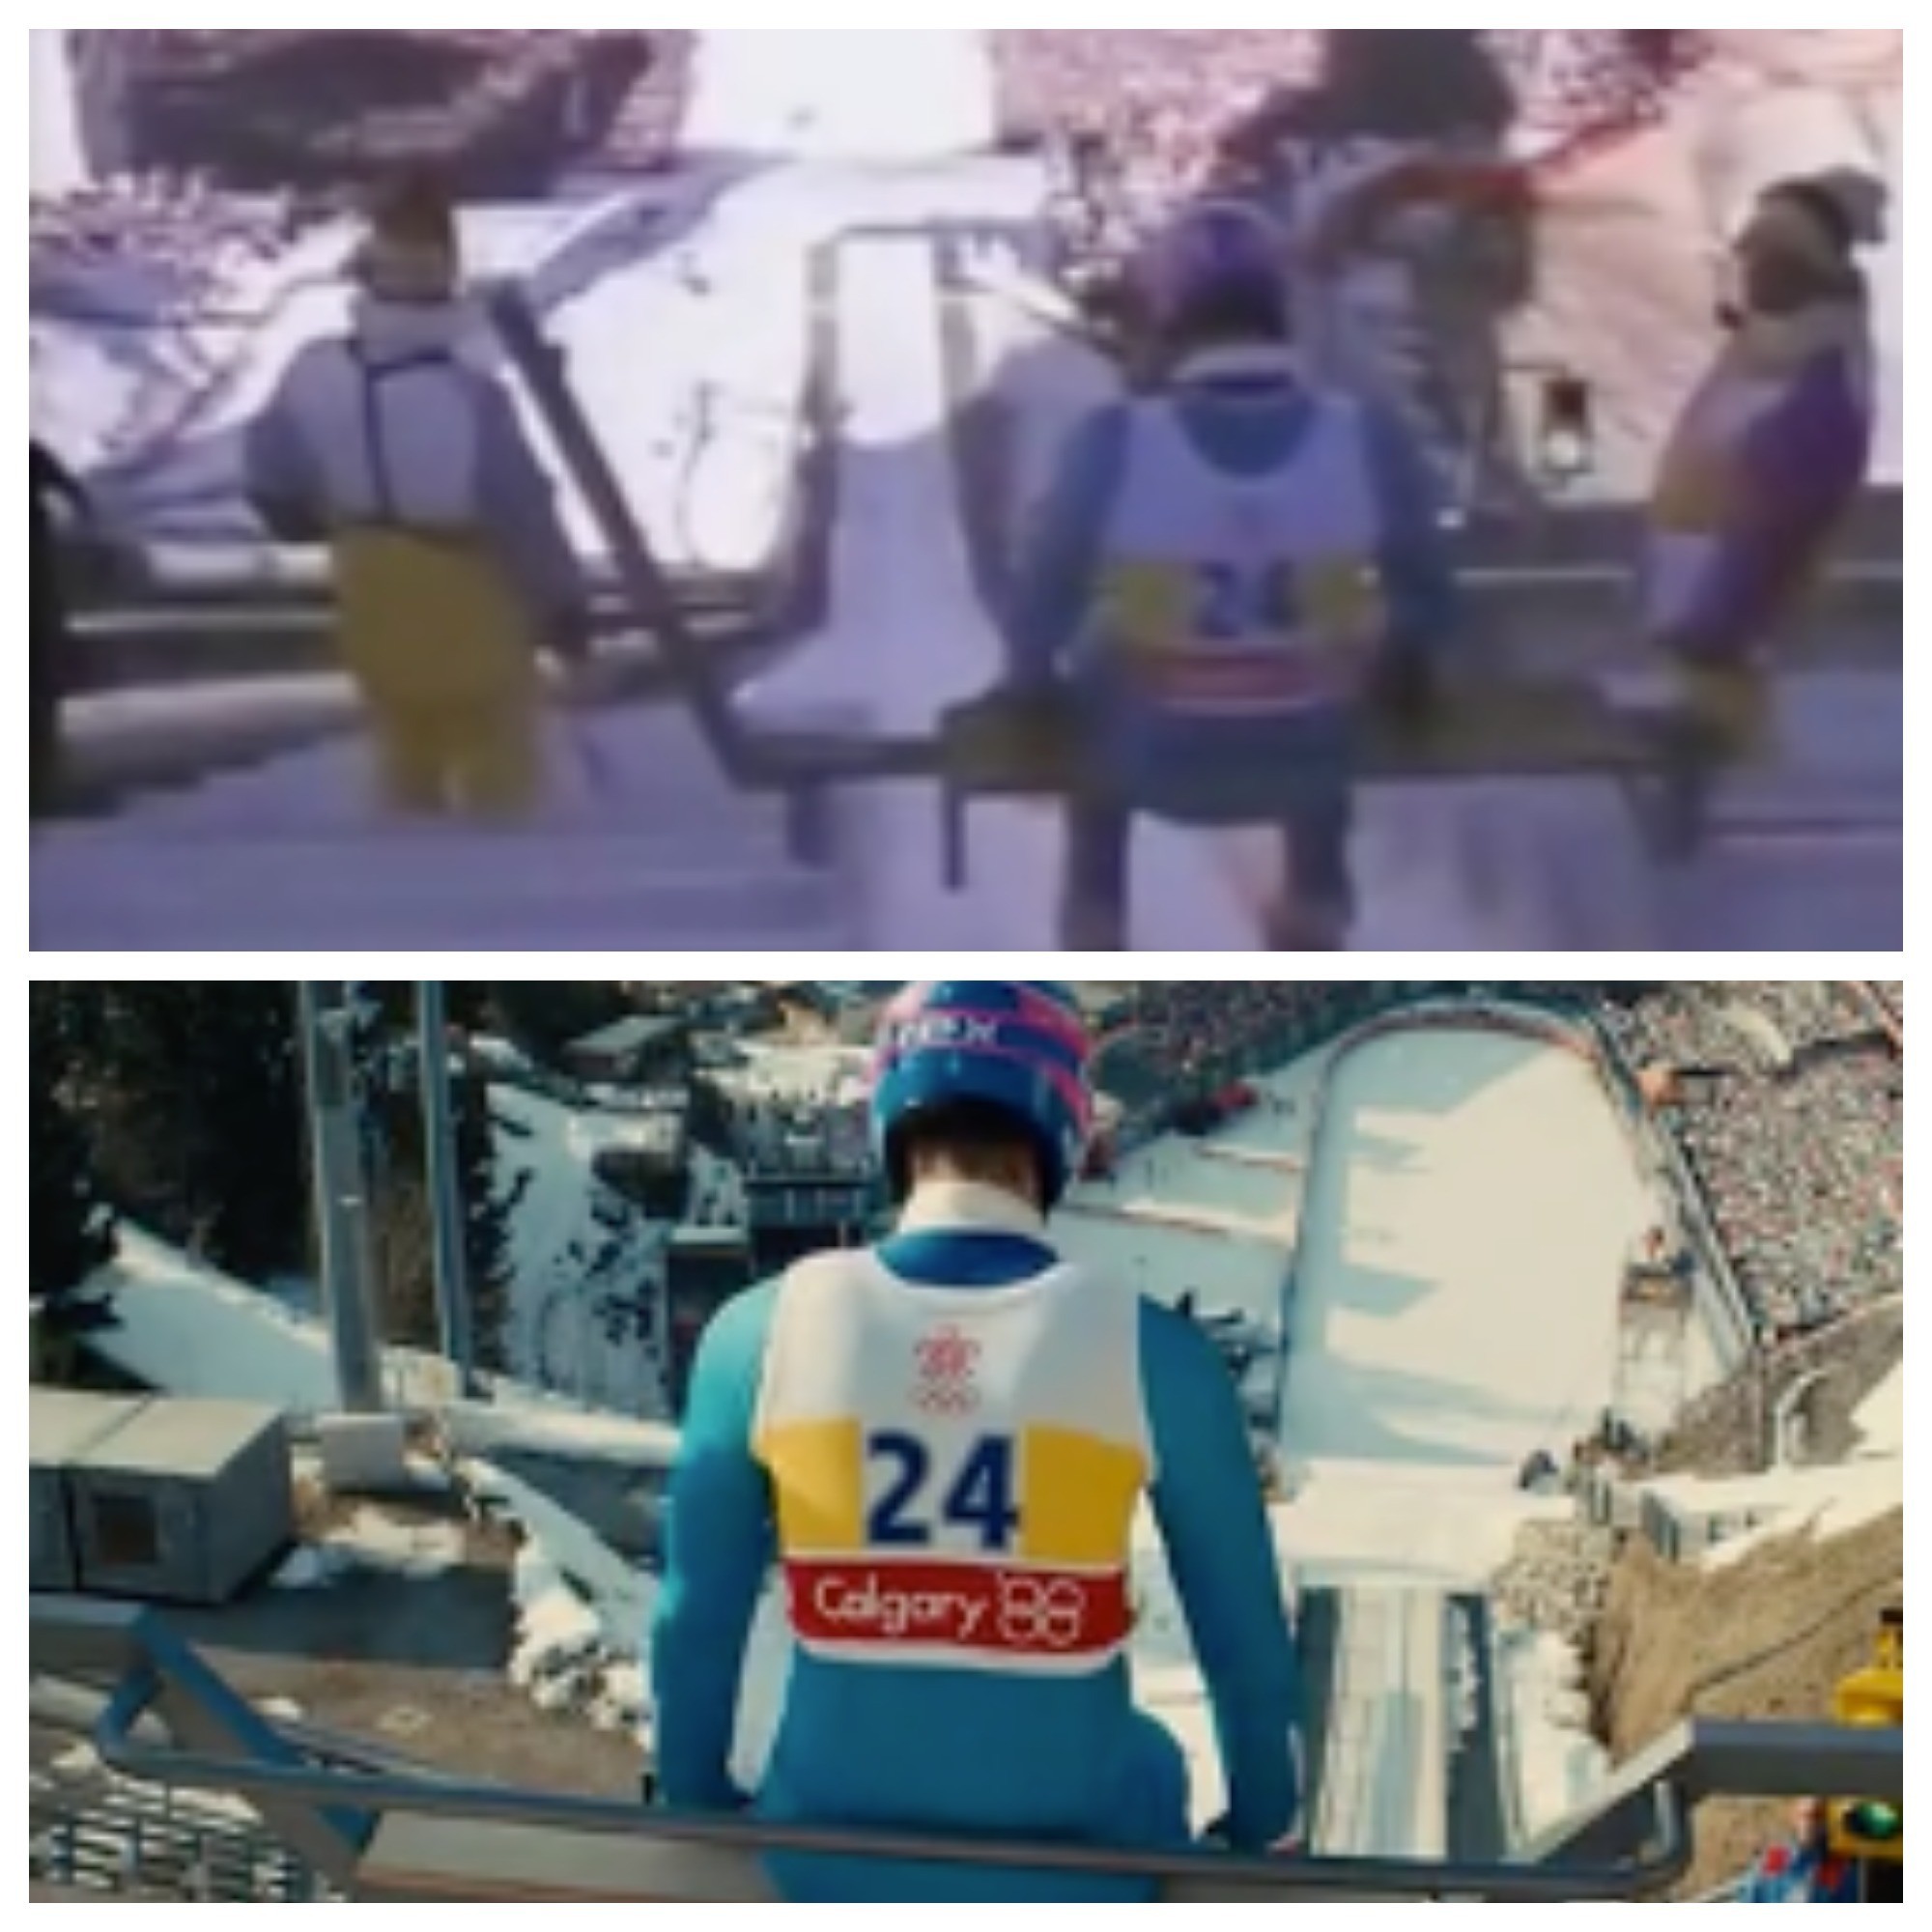 Эдди Эдвардс перед прыжком, кадр из архива 1988-го (выше), кадр из фильма "Эдди Орёл" 2016-го с участием Тэрона Эджертона (ниже).